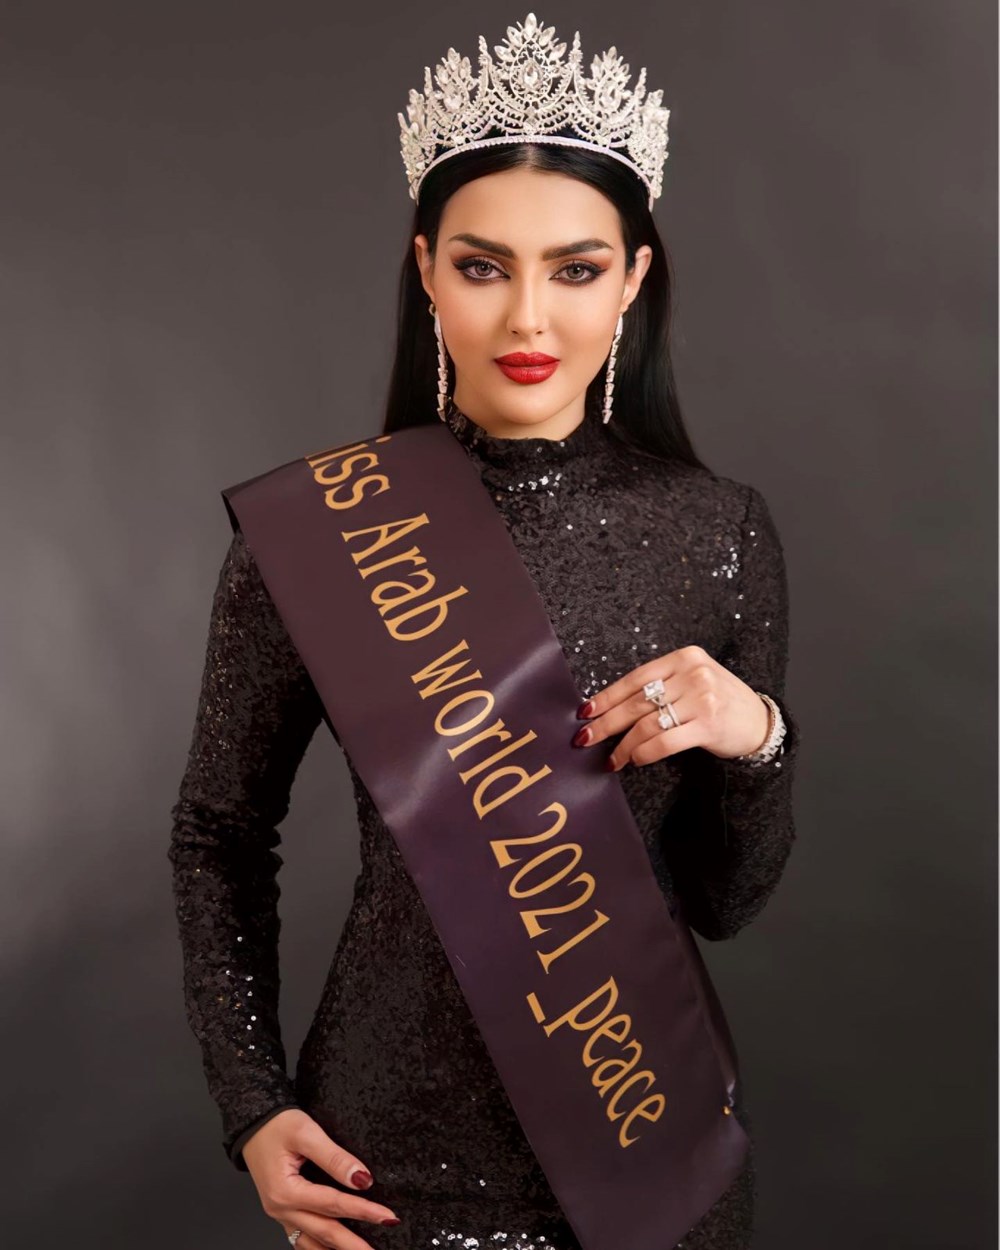 Ülke tarihine geçti! Suudi Arabistanlı model şimdi de Kainat Güzeli olmak için yarışacak - 4